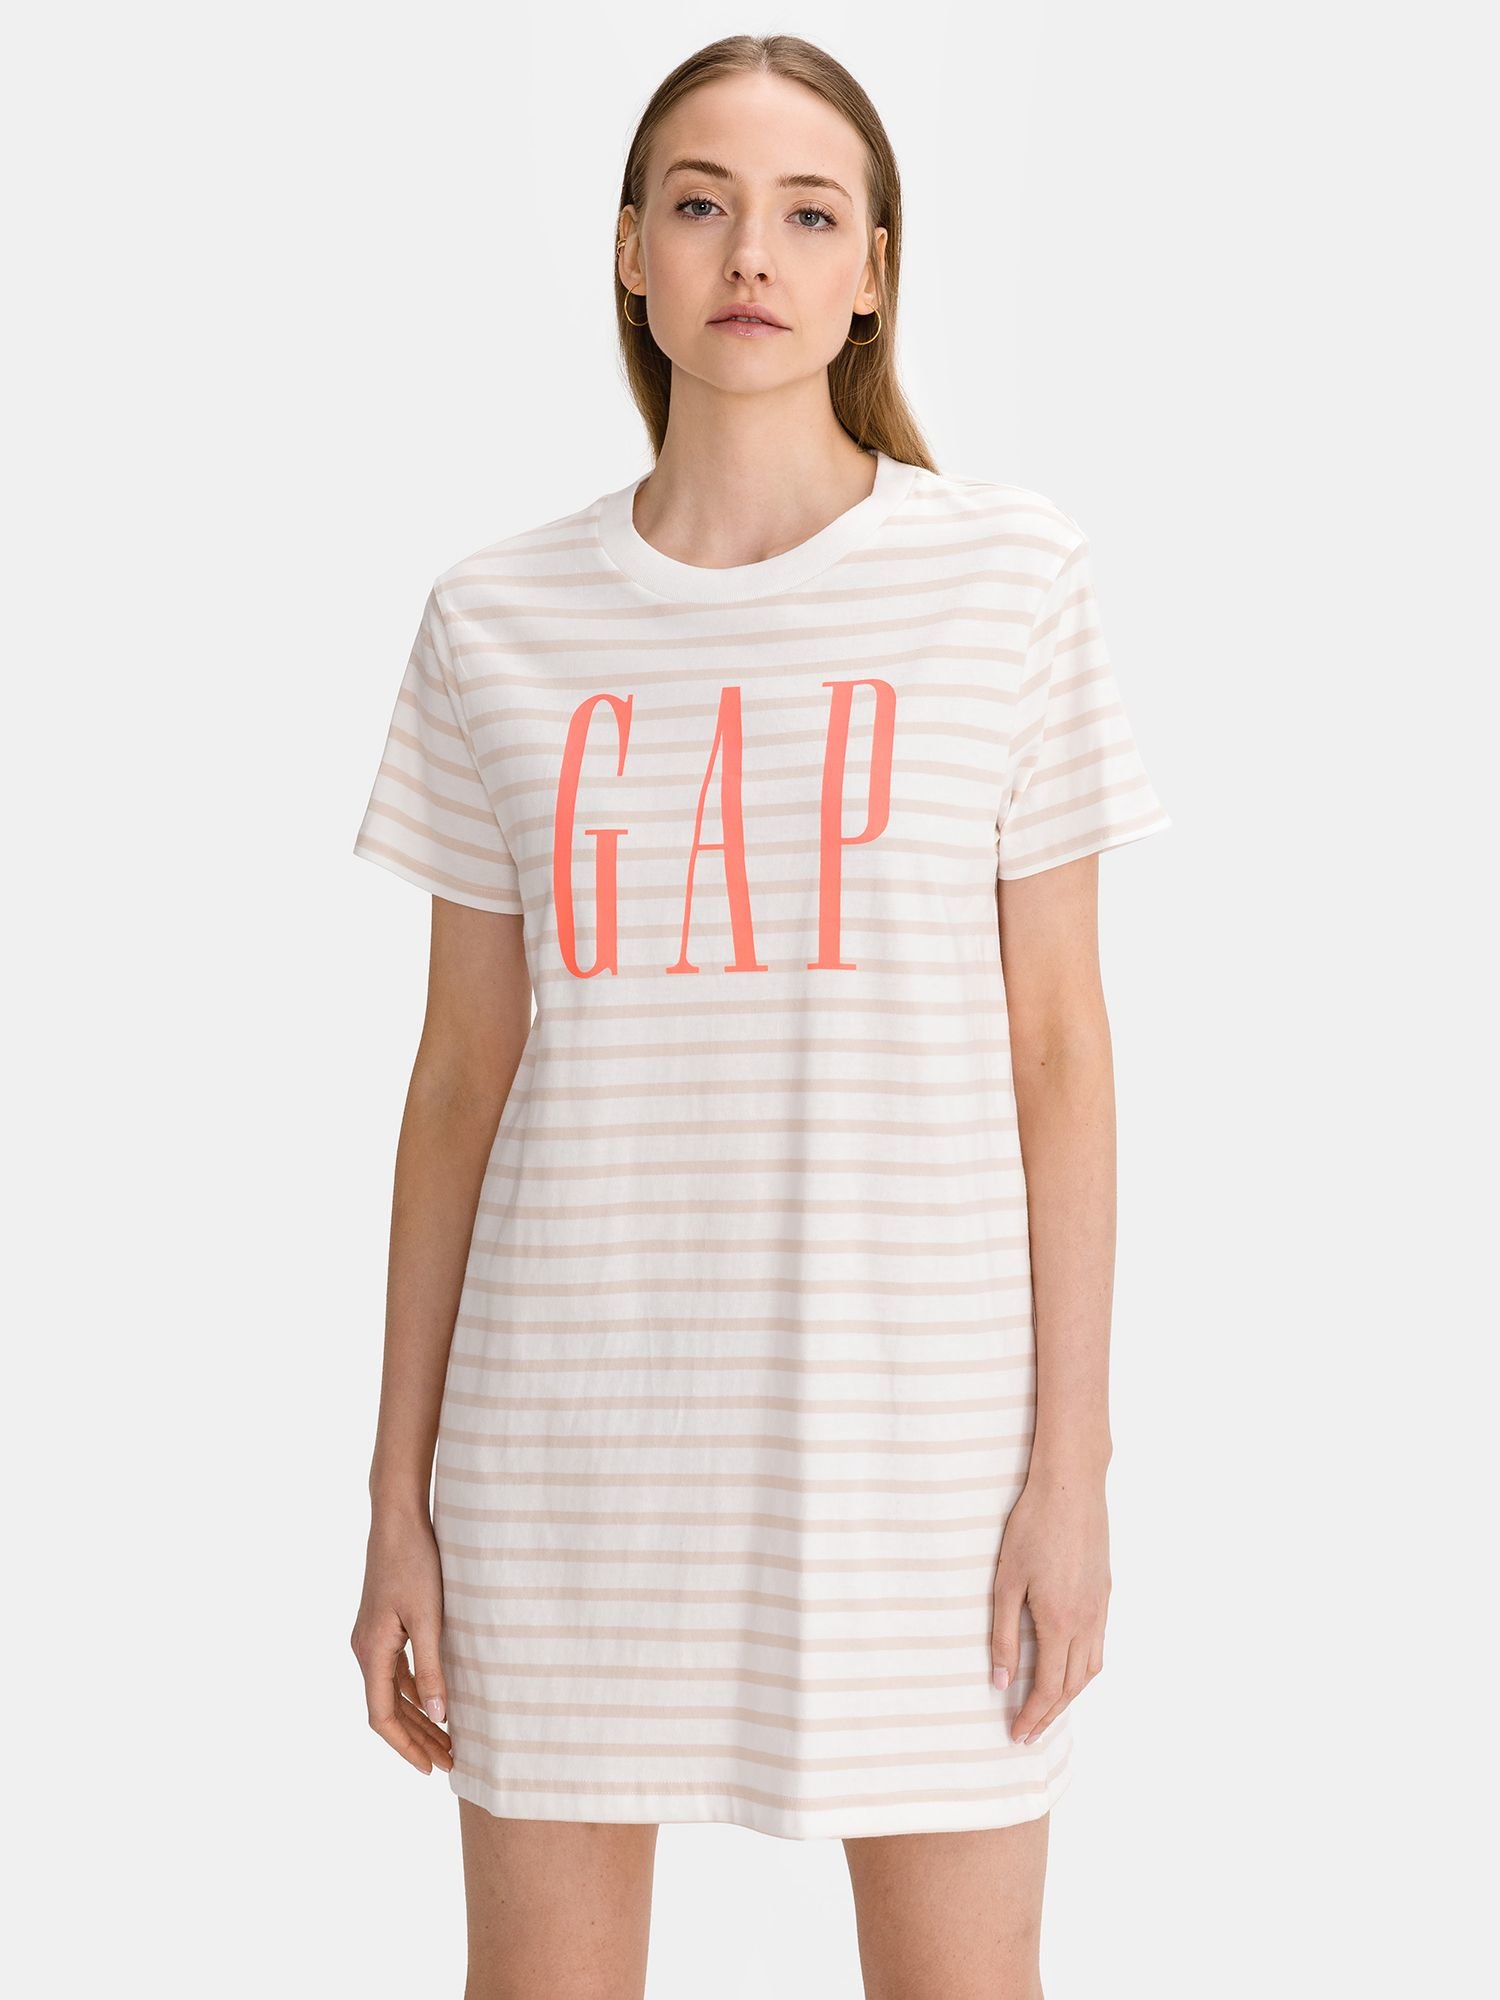 Fotografie Bílé dámské tričko vé šaty GAP Logo t-shirt dress